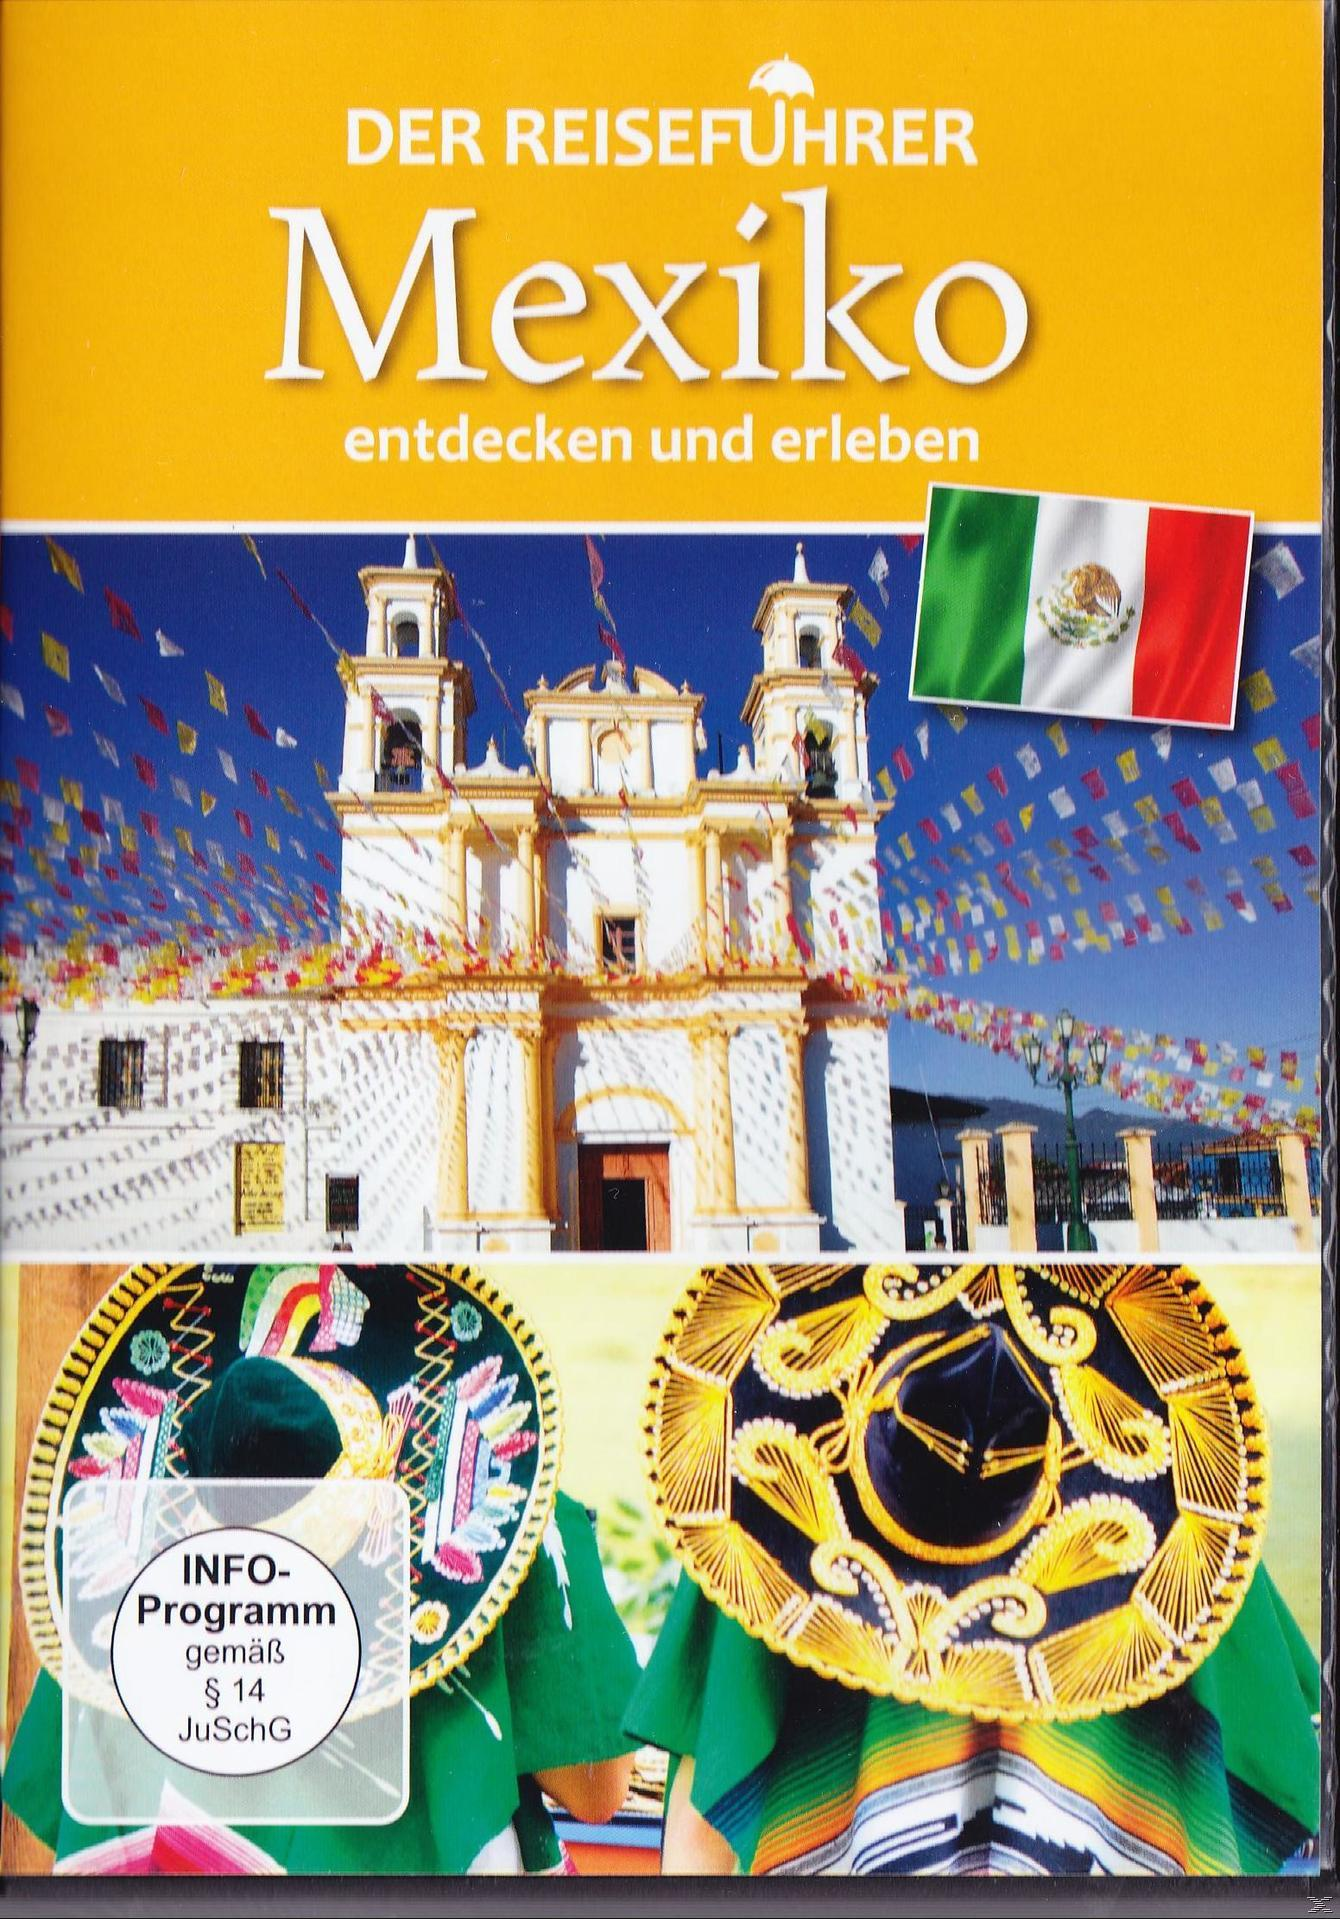 Der DVD - Reiseführer Mexiko